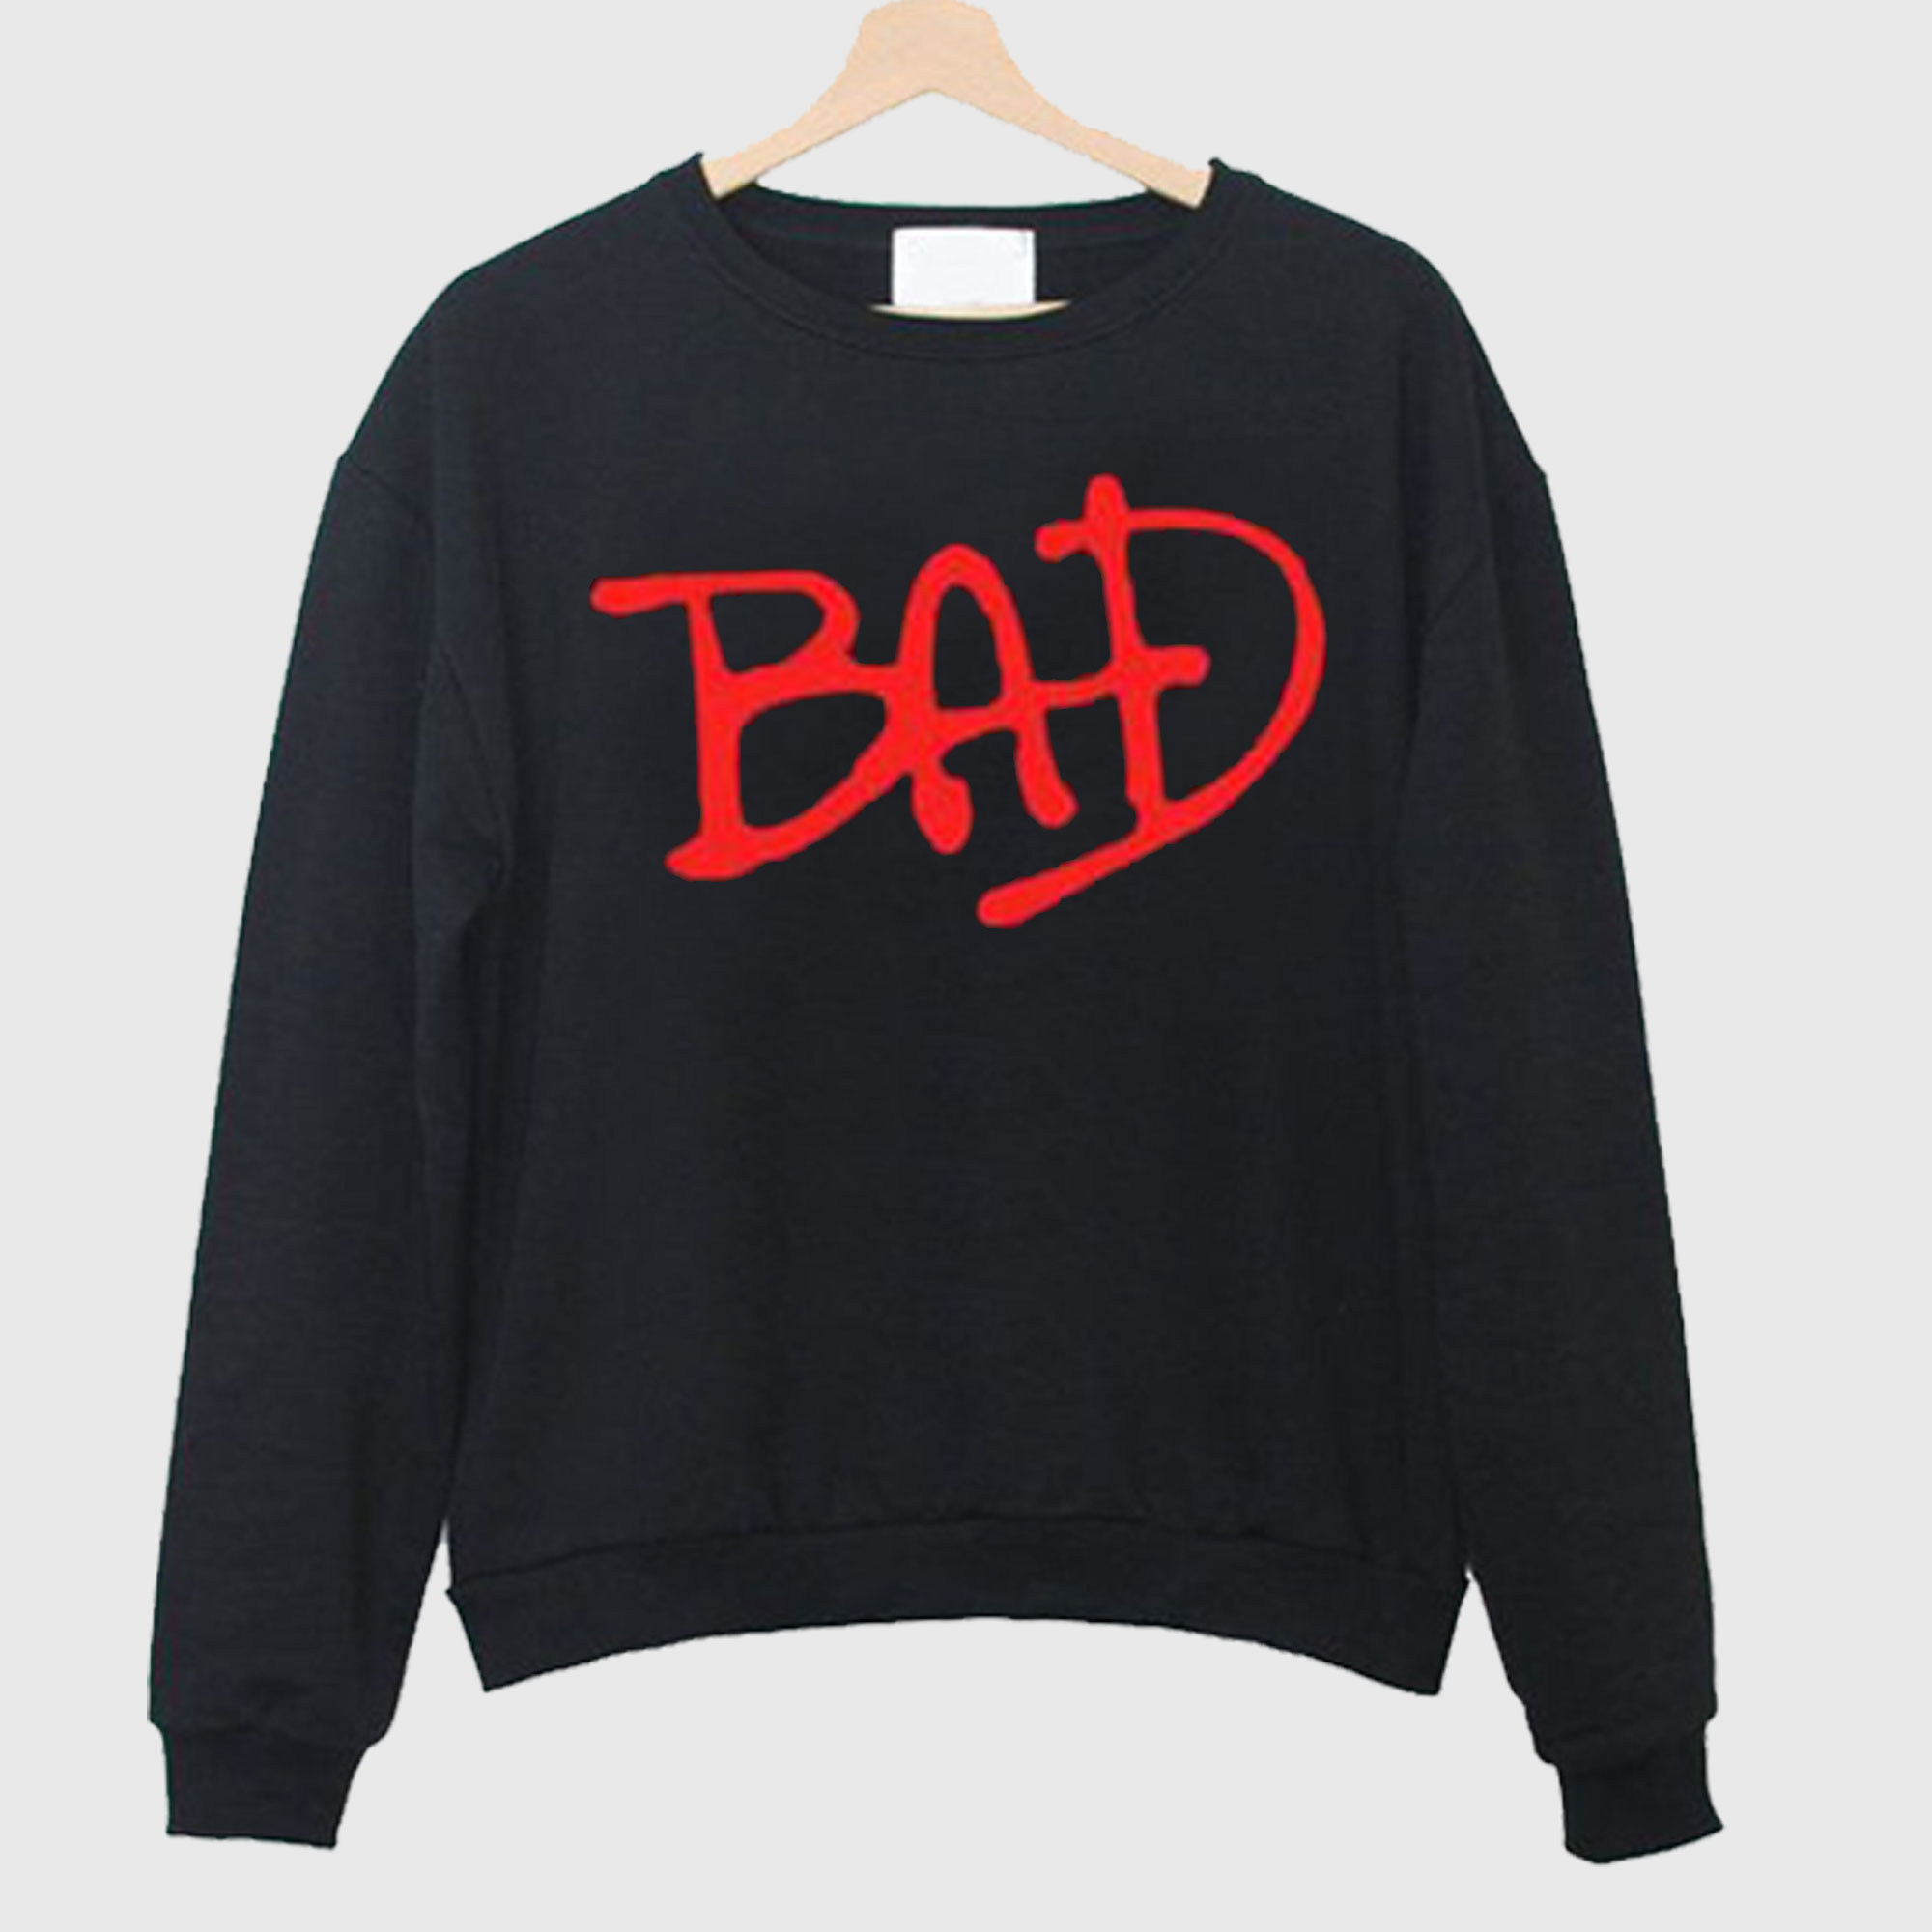 Bad Unisex Sweatshirt